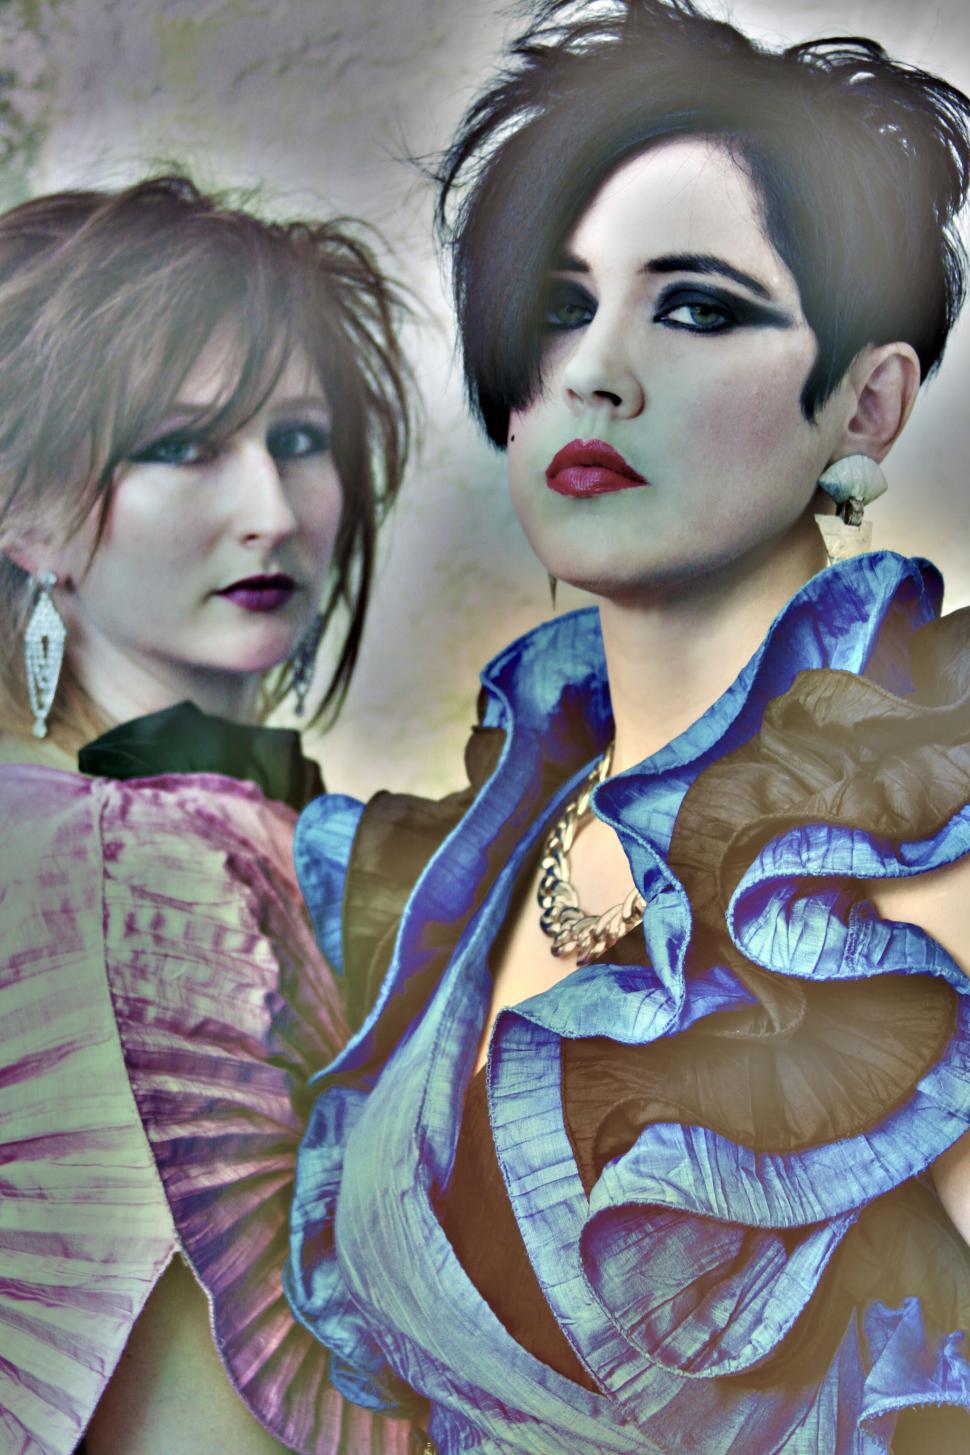 Free Image of Stylized photo of two women in avant-garde attire 